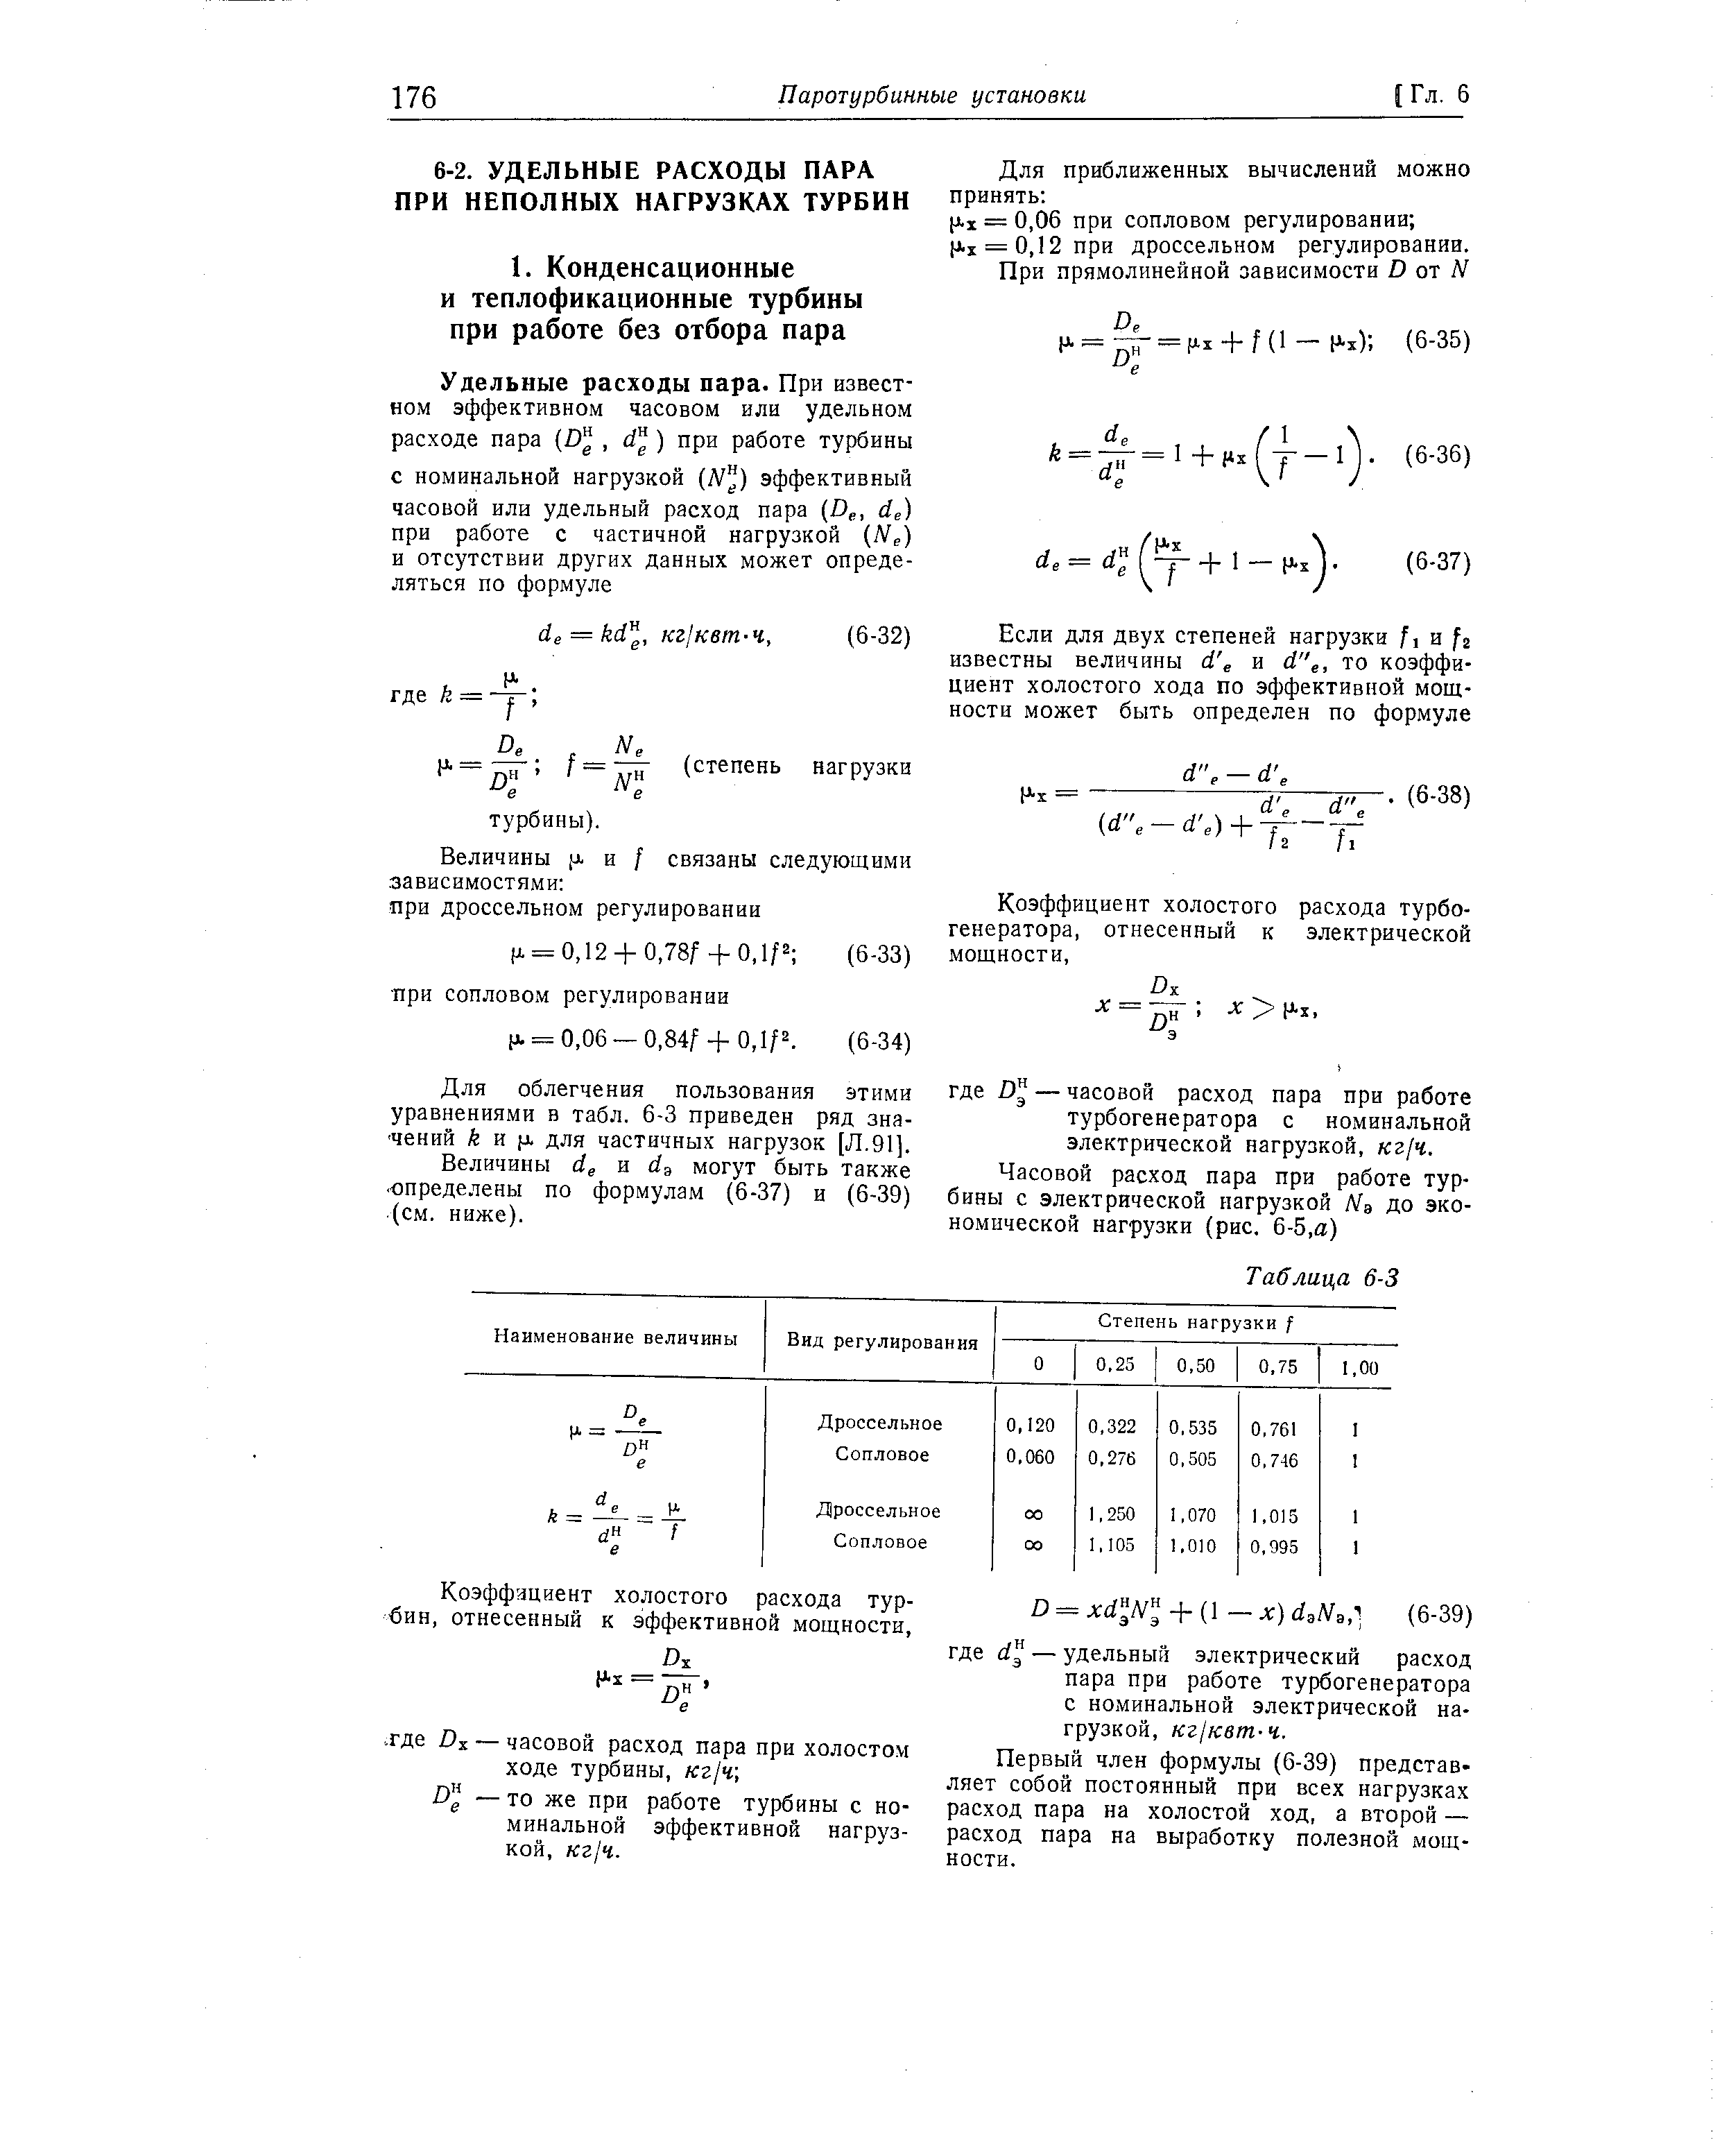 Для облегчения пользования этими уравнениями в табл. 6-3 приведен ряд значений й и х для частичных нагрузок [Л.91].
